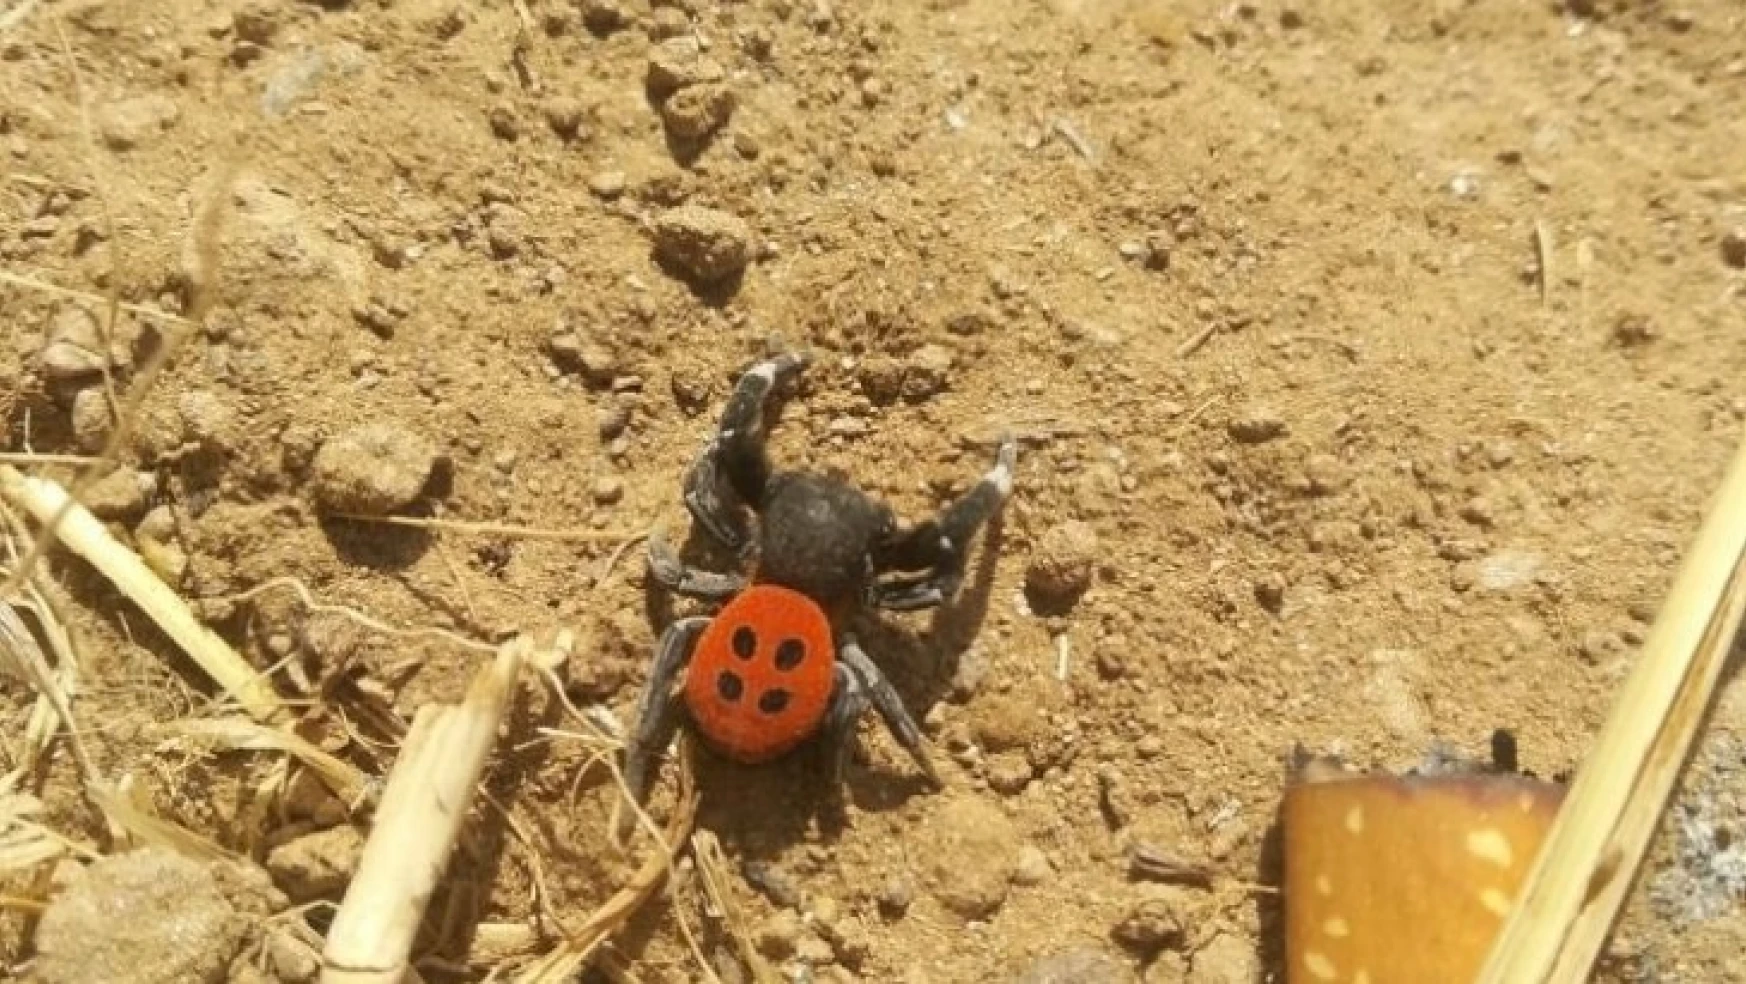 Zehirli örümcek Karacasu'da da görüldü